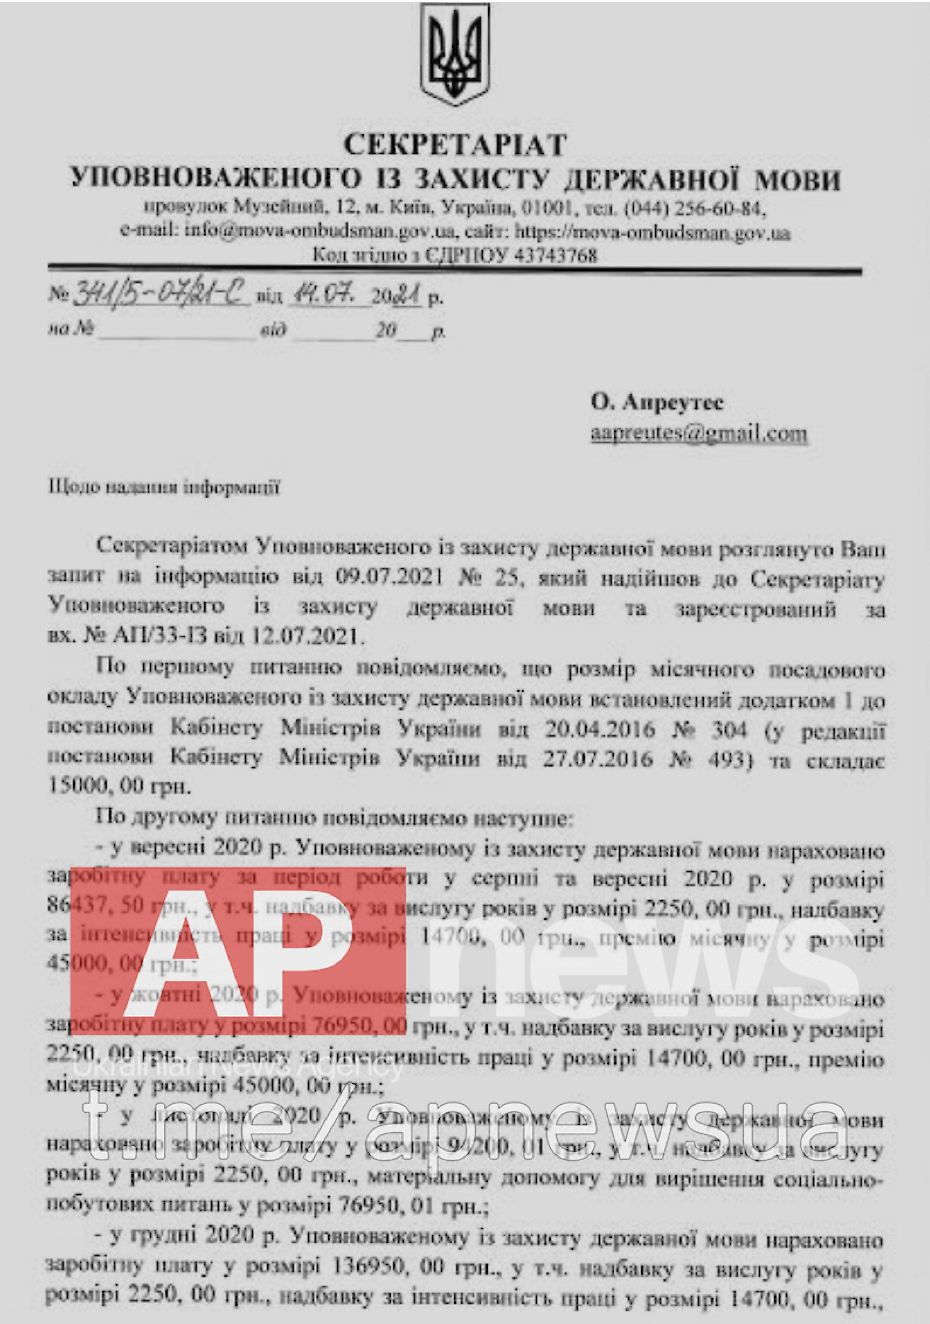 "Мовный омбудсмен" Креминь за год на своей должности заработал почти миллион гривен